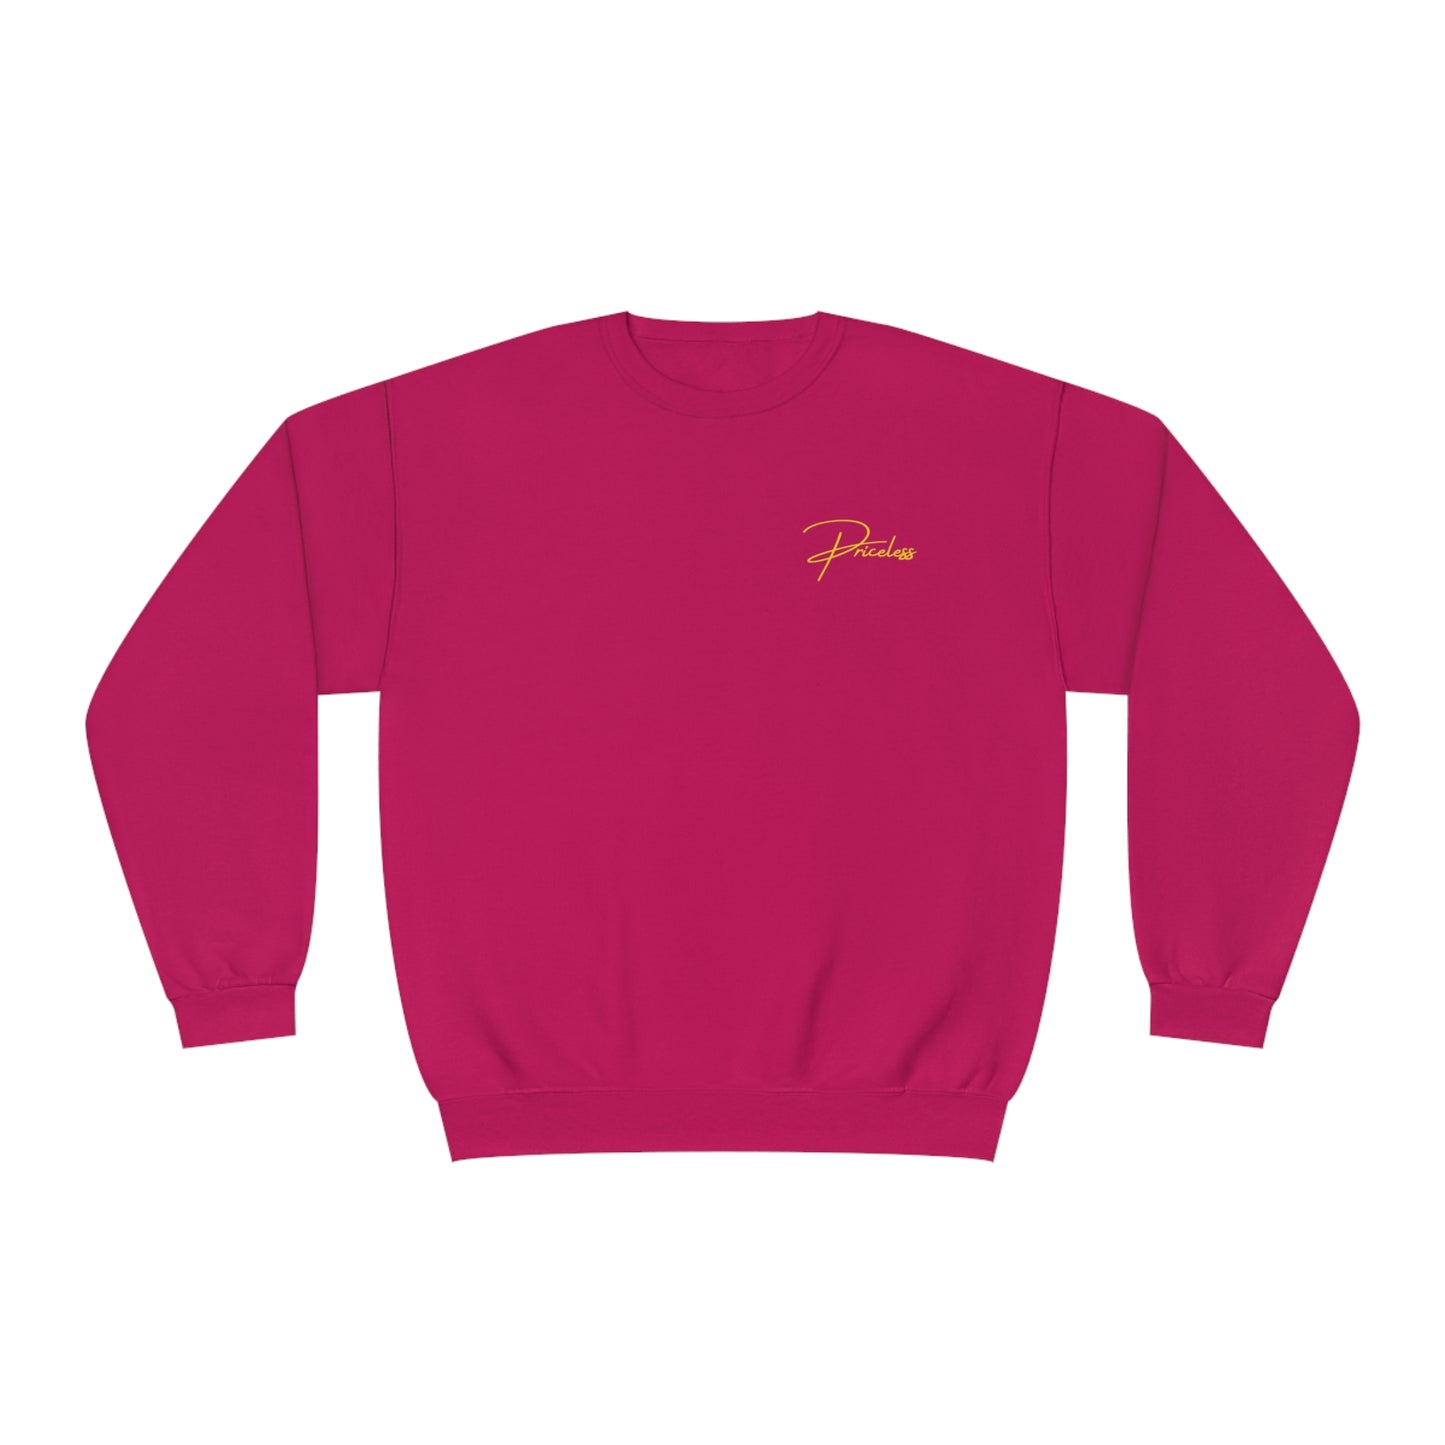 Pricele$$™ Unisex Premium Crewneck Sweatshirt